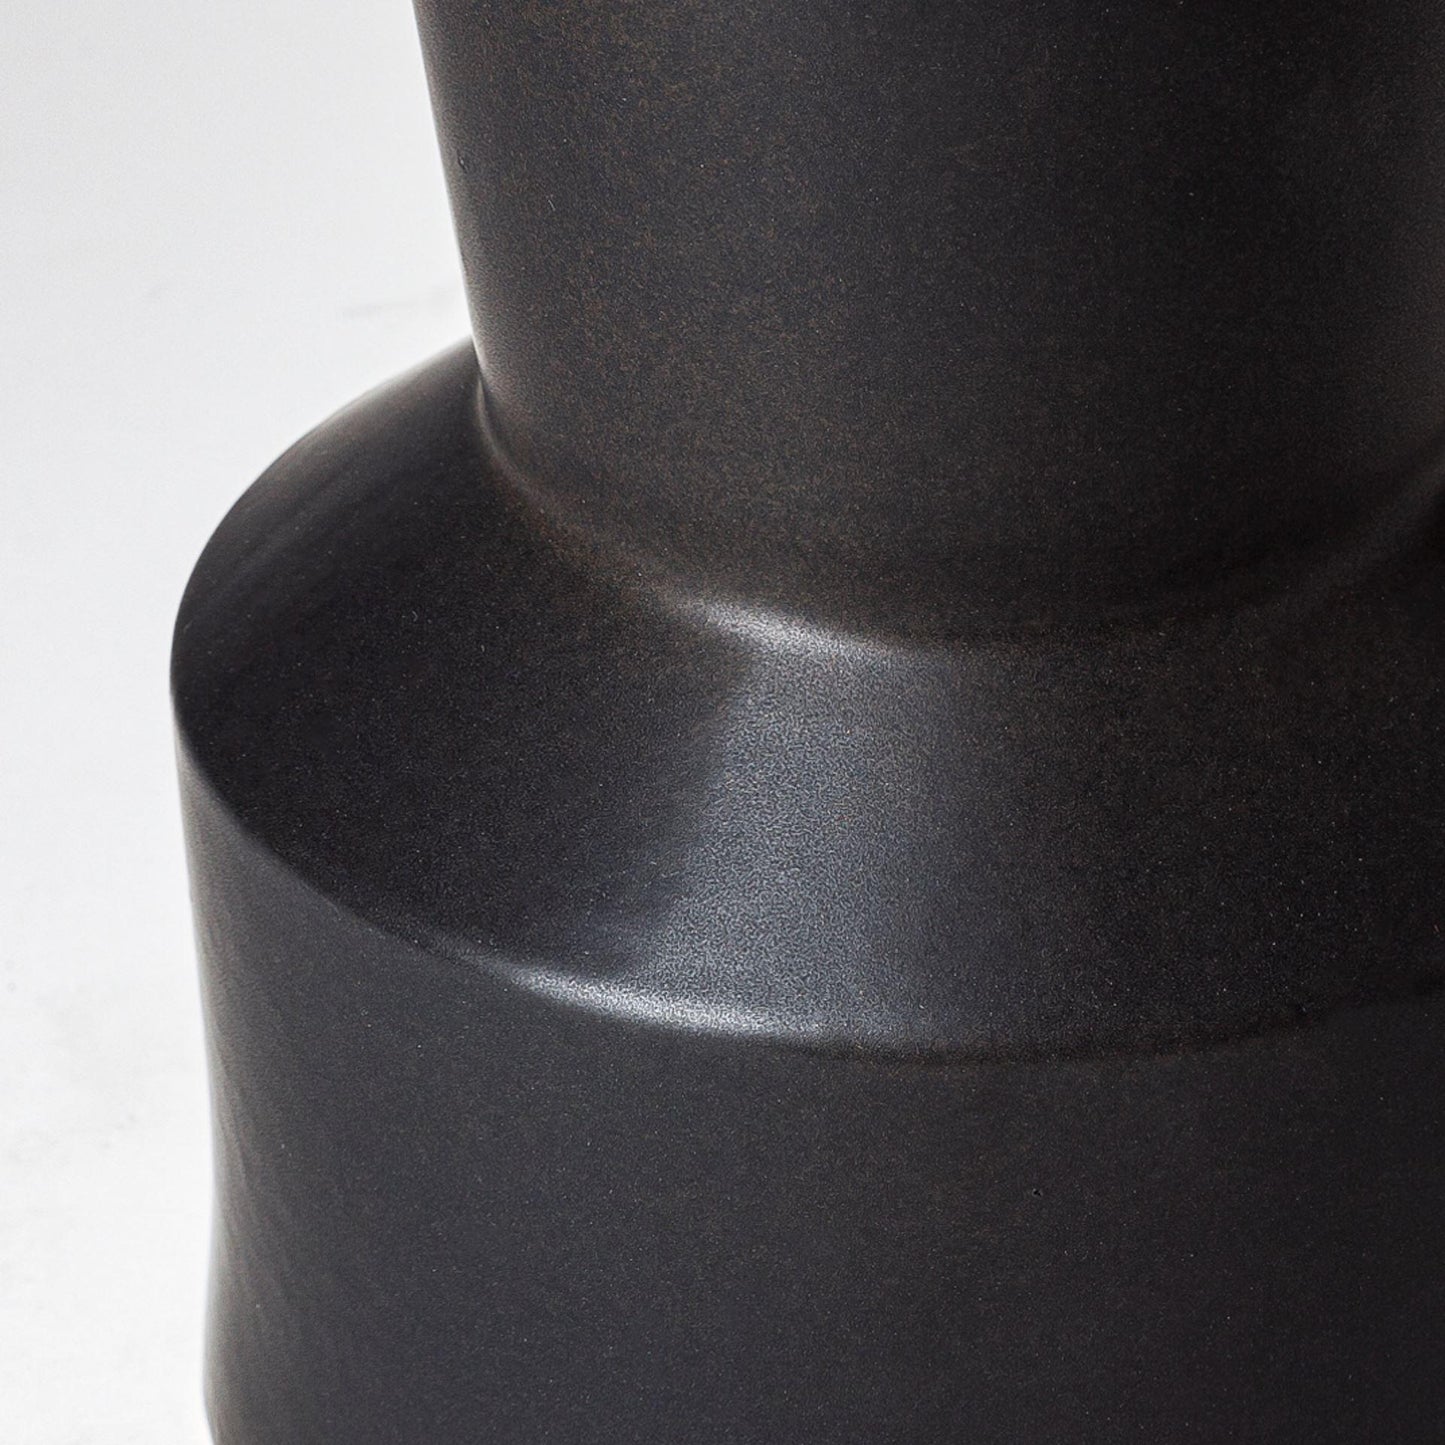 Laforge Black Ceramic Vase